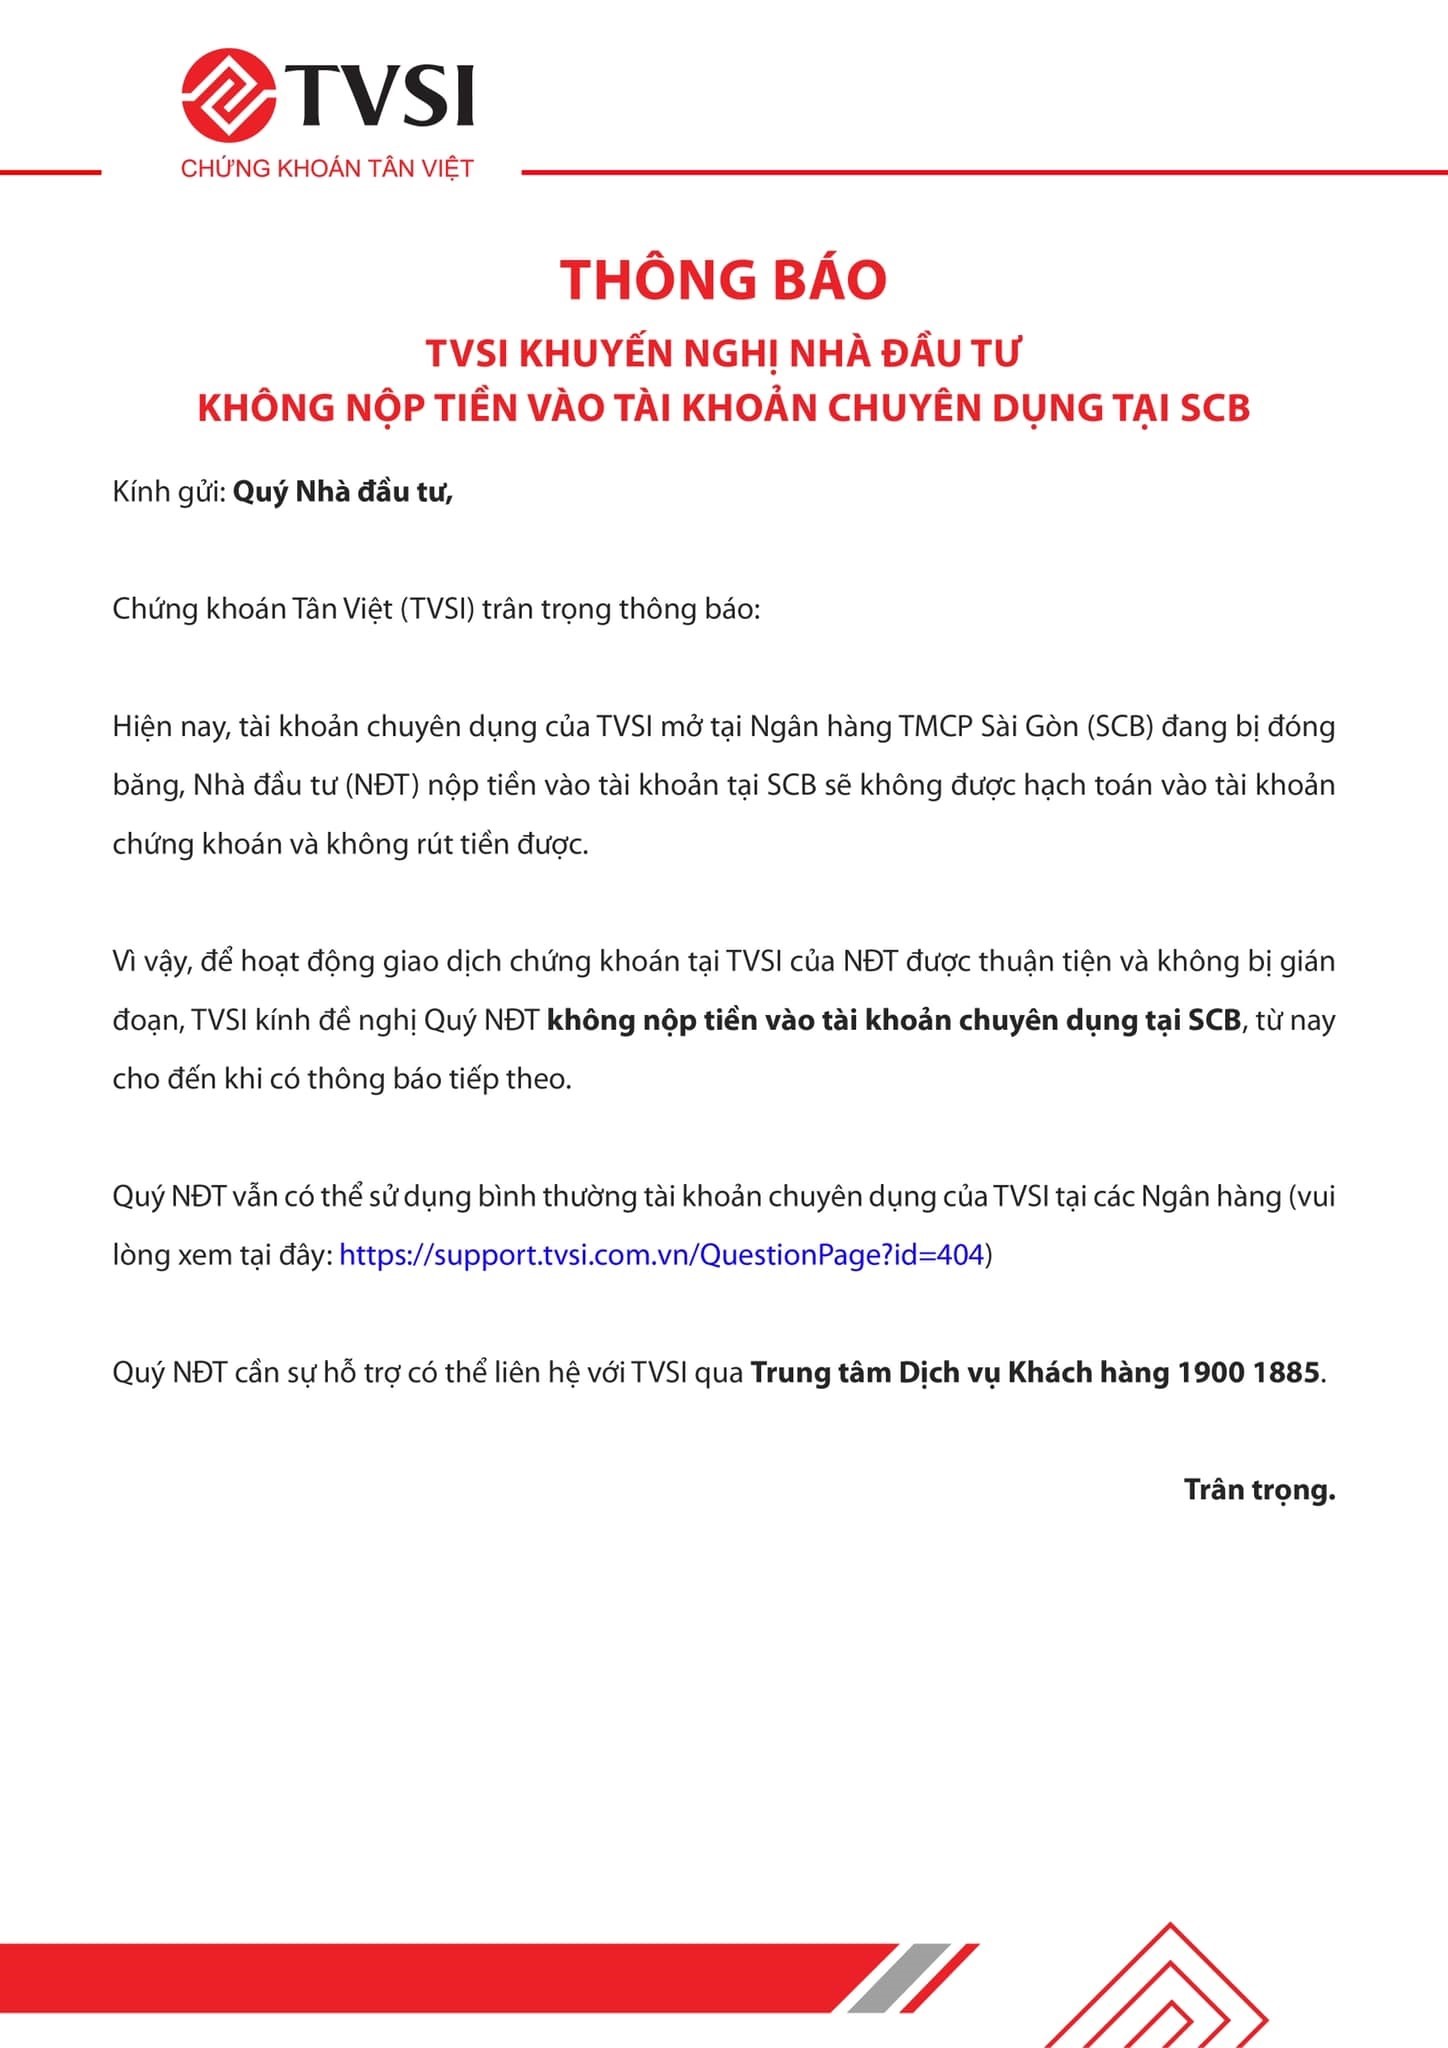 Chứng khoán Tân Việt (TVSI) cho biết nhà đầu tư nộp tiền vào tài khoản tại SCB sẽ không được hạch toán vào tài khoản chứng khoán và không rút tiền được.